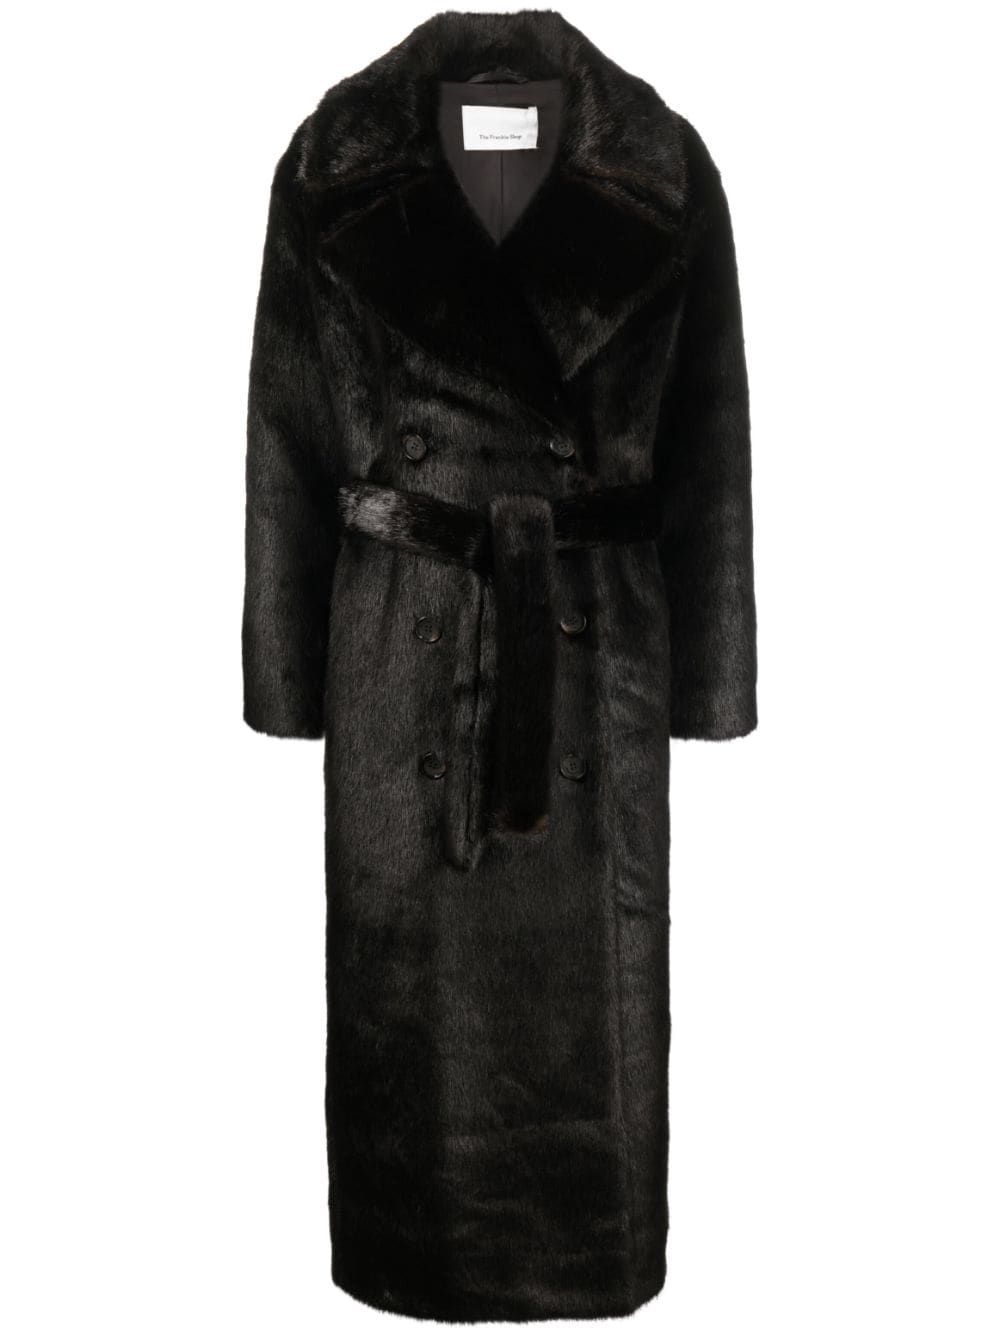 The Frankie Shop Jonie faux-fur Belted Coat - Farfetch | Farfetch Global